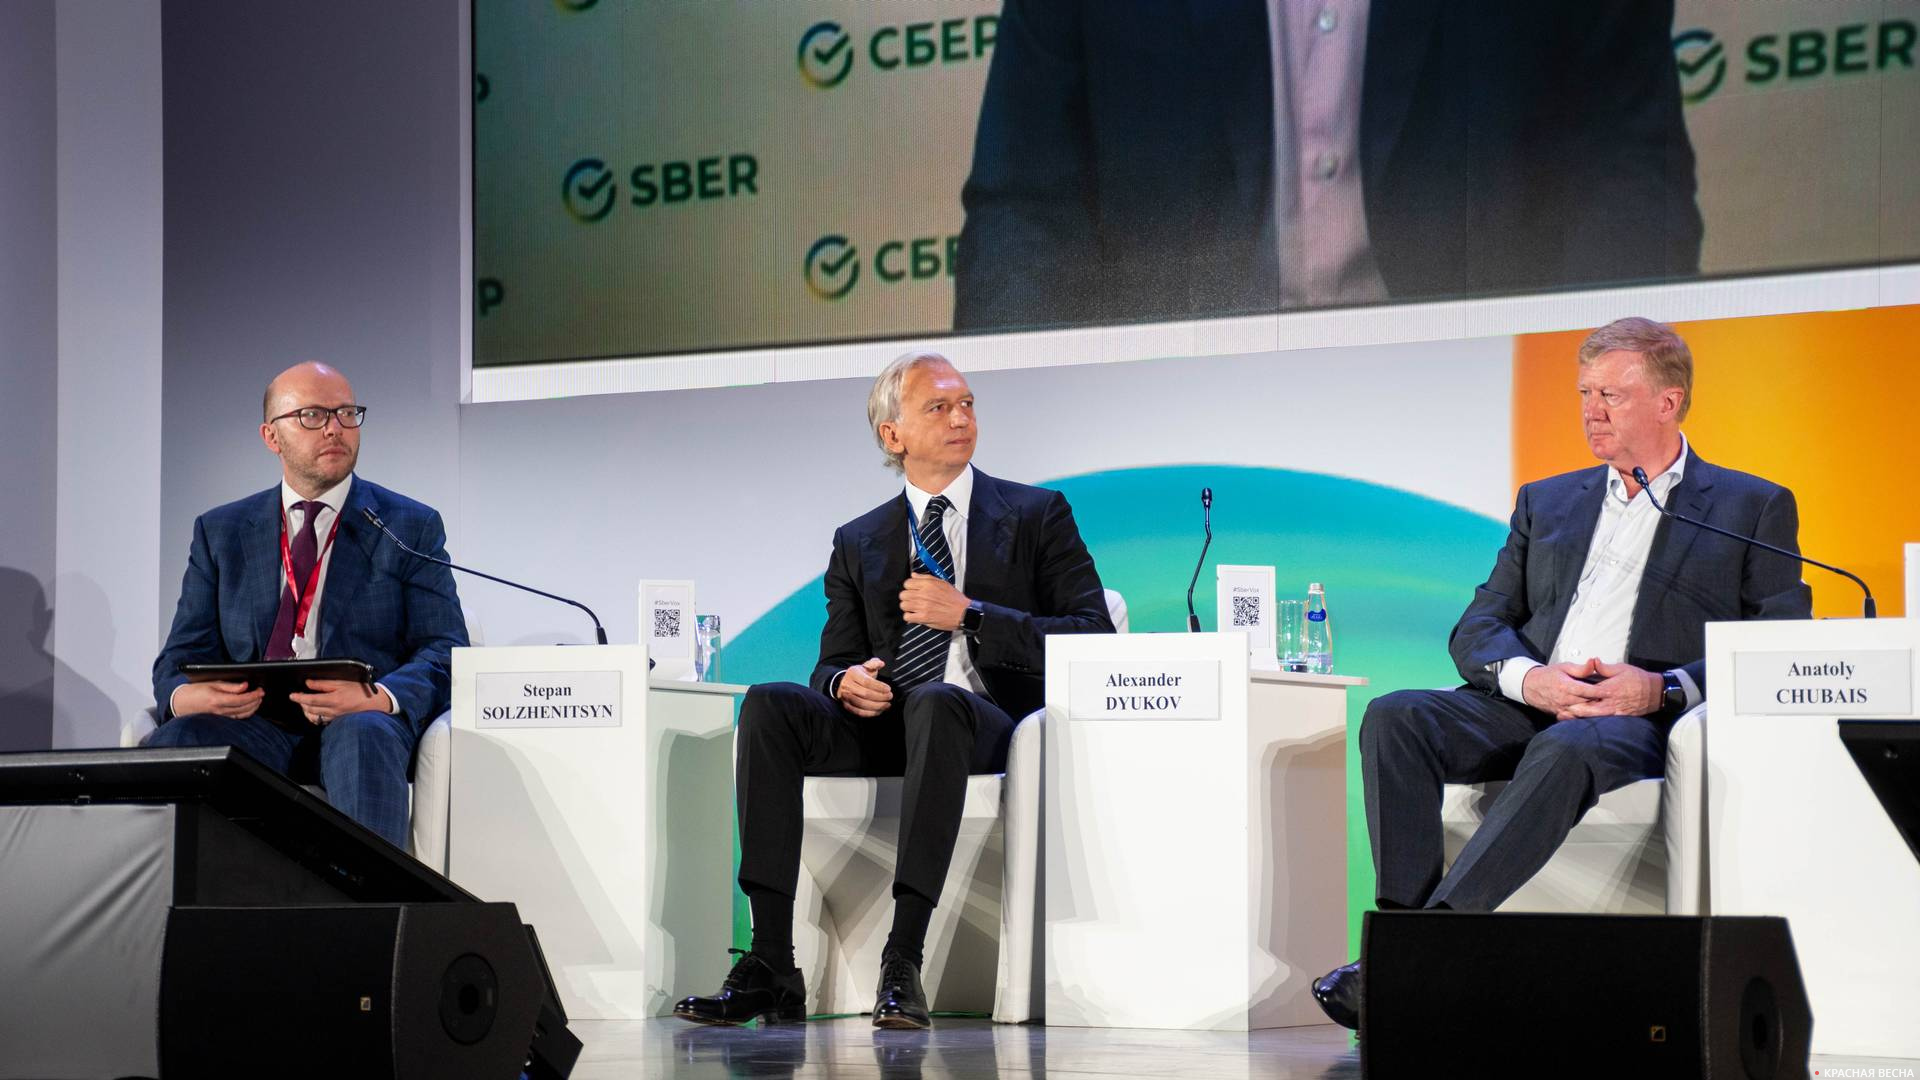 Степан Солженицын, Александр Дюков и Анатолий Чубайс на сессии «Готова ли Россия к глобальной ESG-трансформации?» в рамках ВЭФ-2021